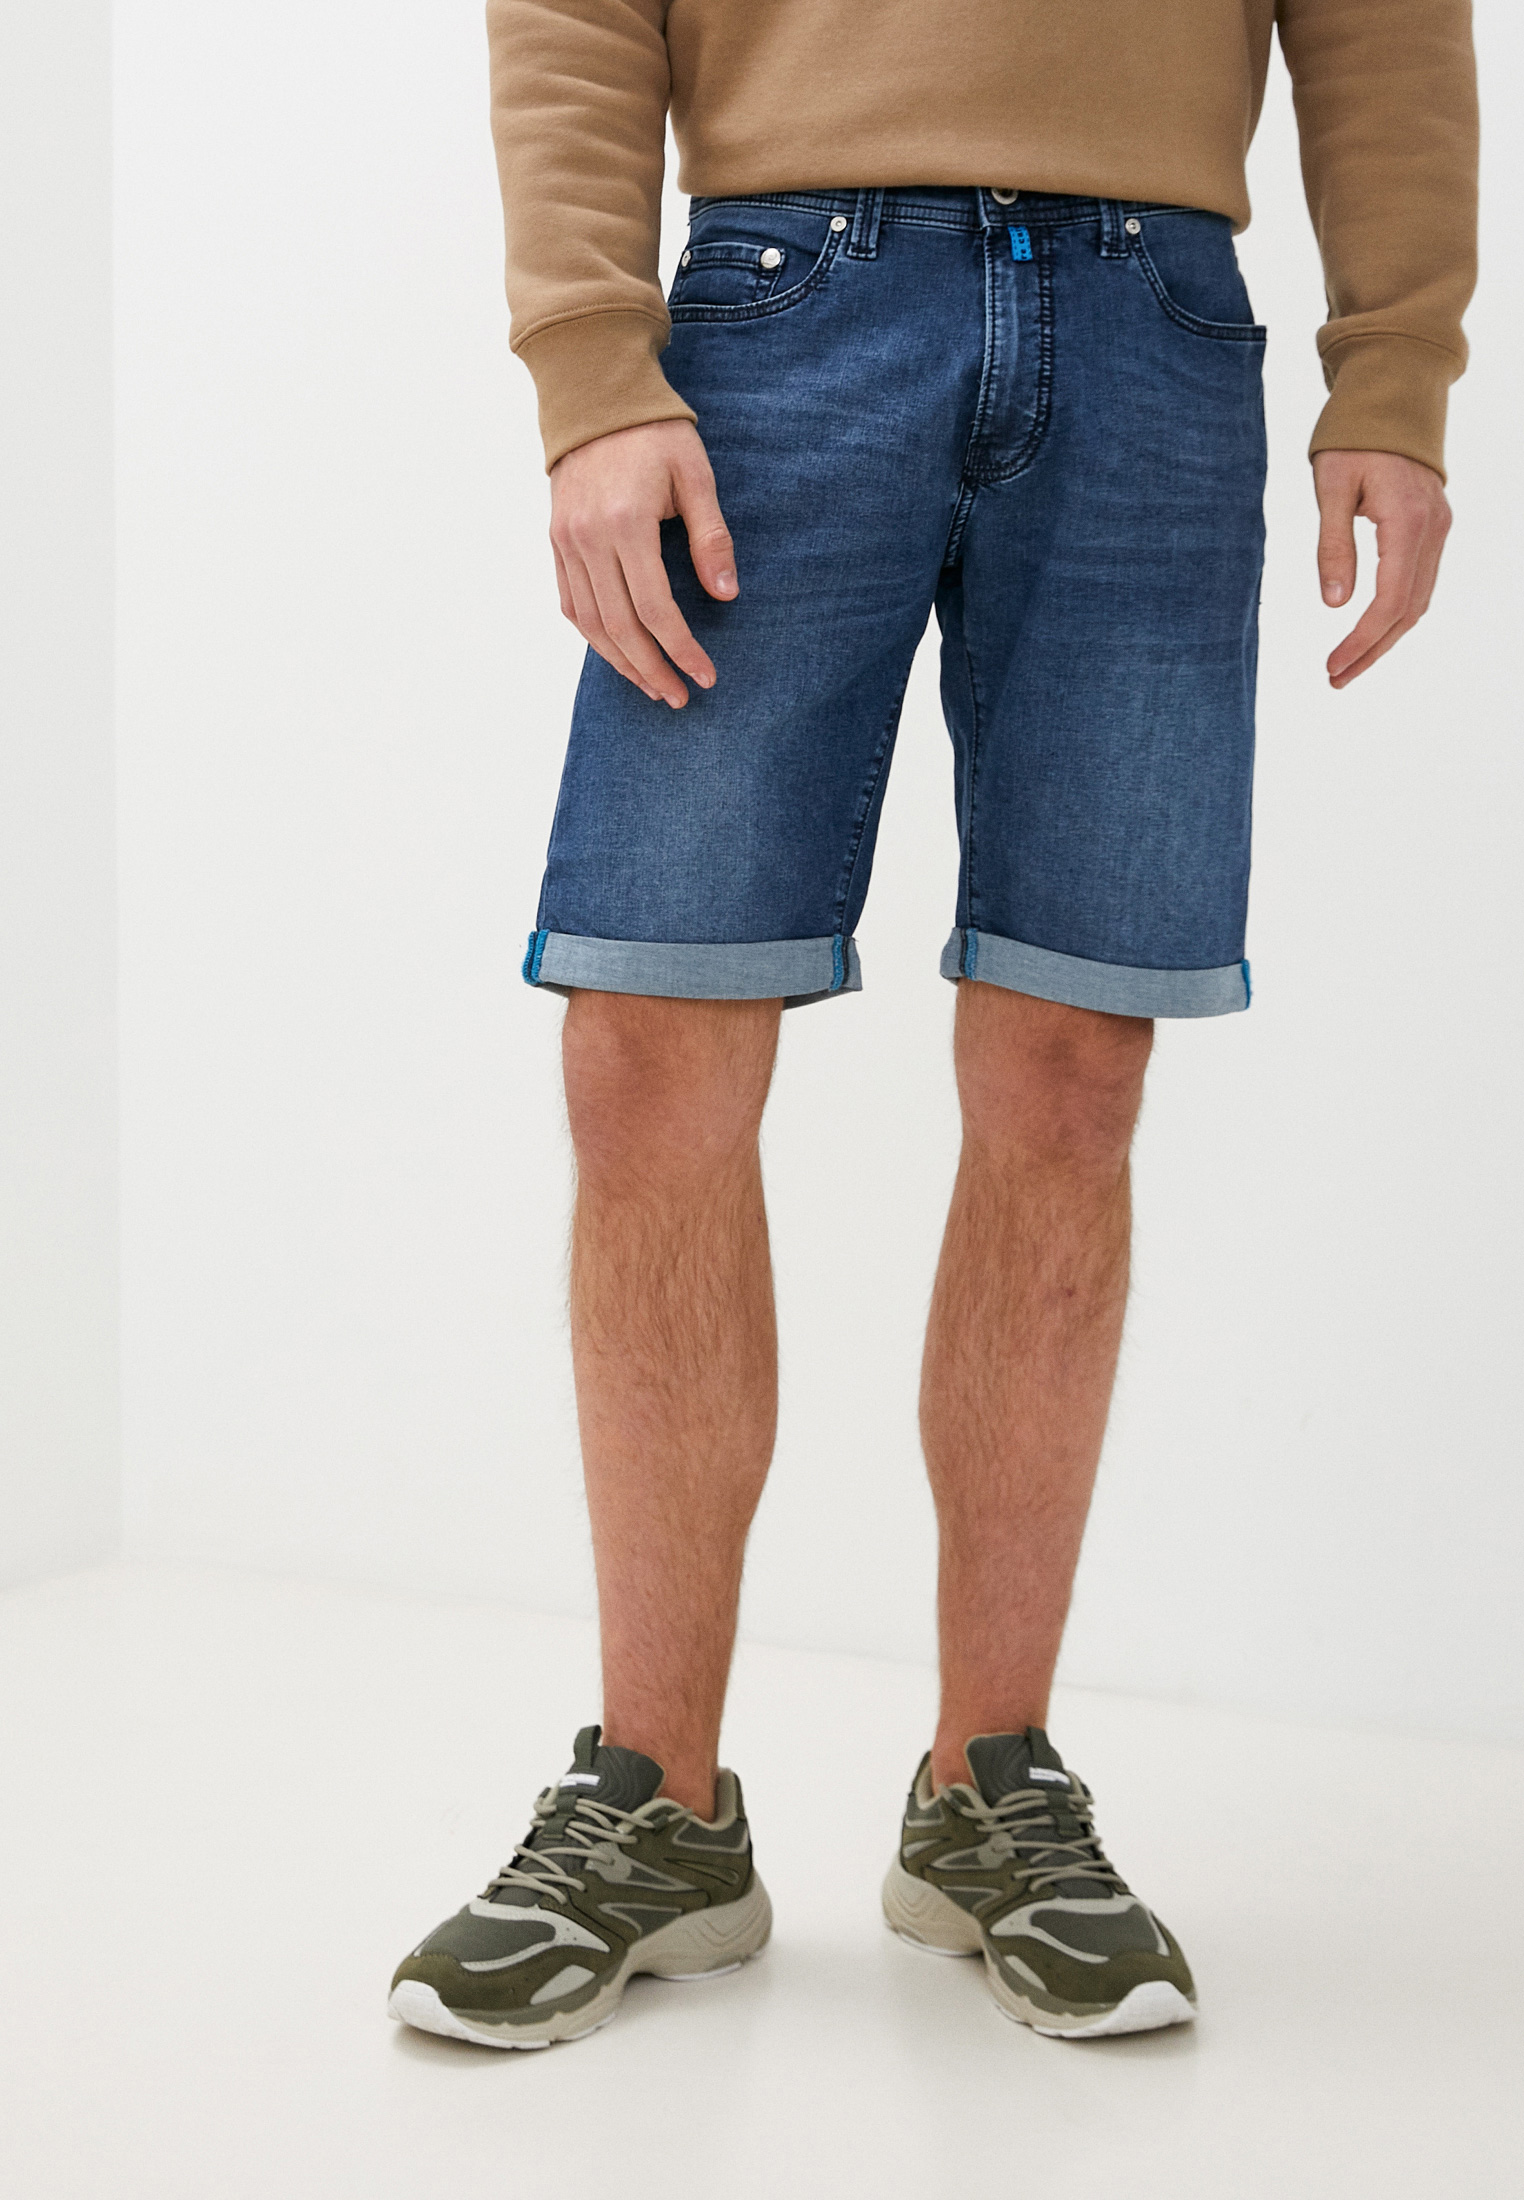 Мужские джинсовые шорты Pierre Cardin (Пьер Кардин) C7 34520.8032/6828